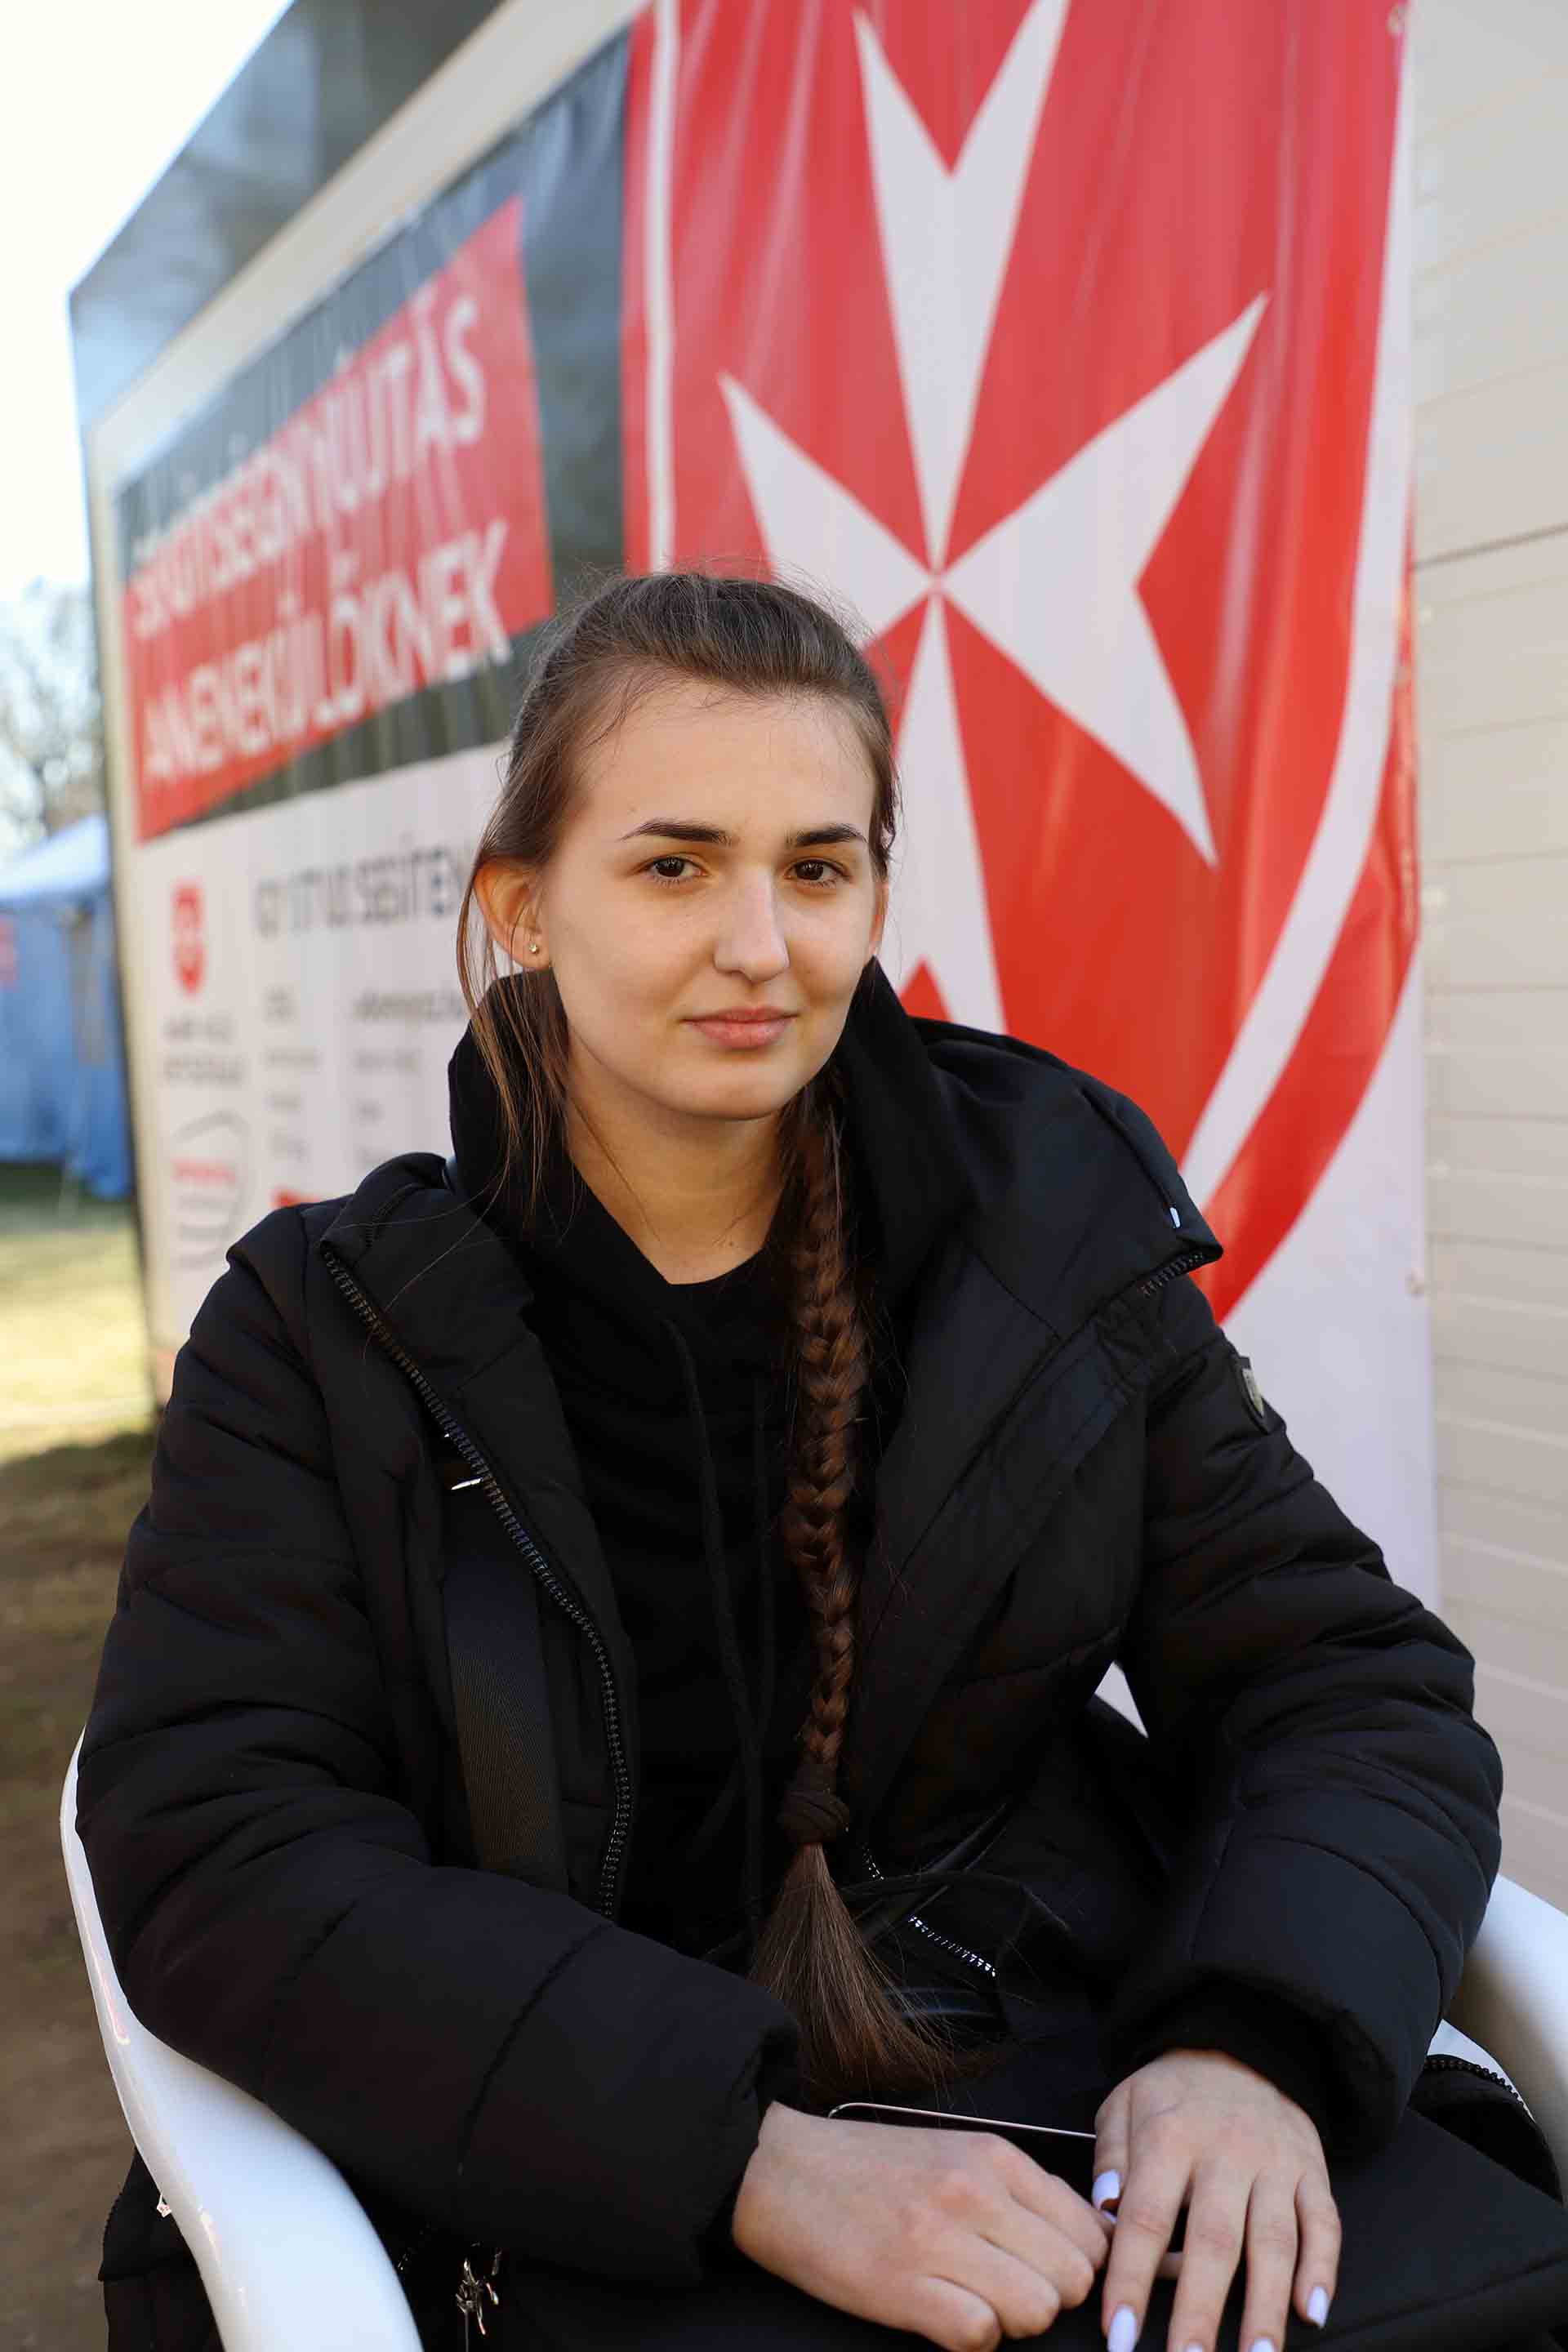 Nataliia, una joven refugiada de 20 años en el centro de asistencia de Beregsurány en Hungría, procedente de un bombardeo en Irpin, Ucrania / Foto: FFM - EA